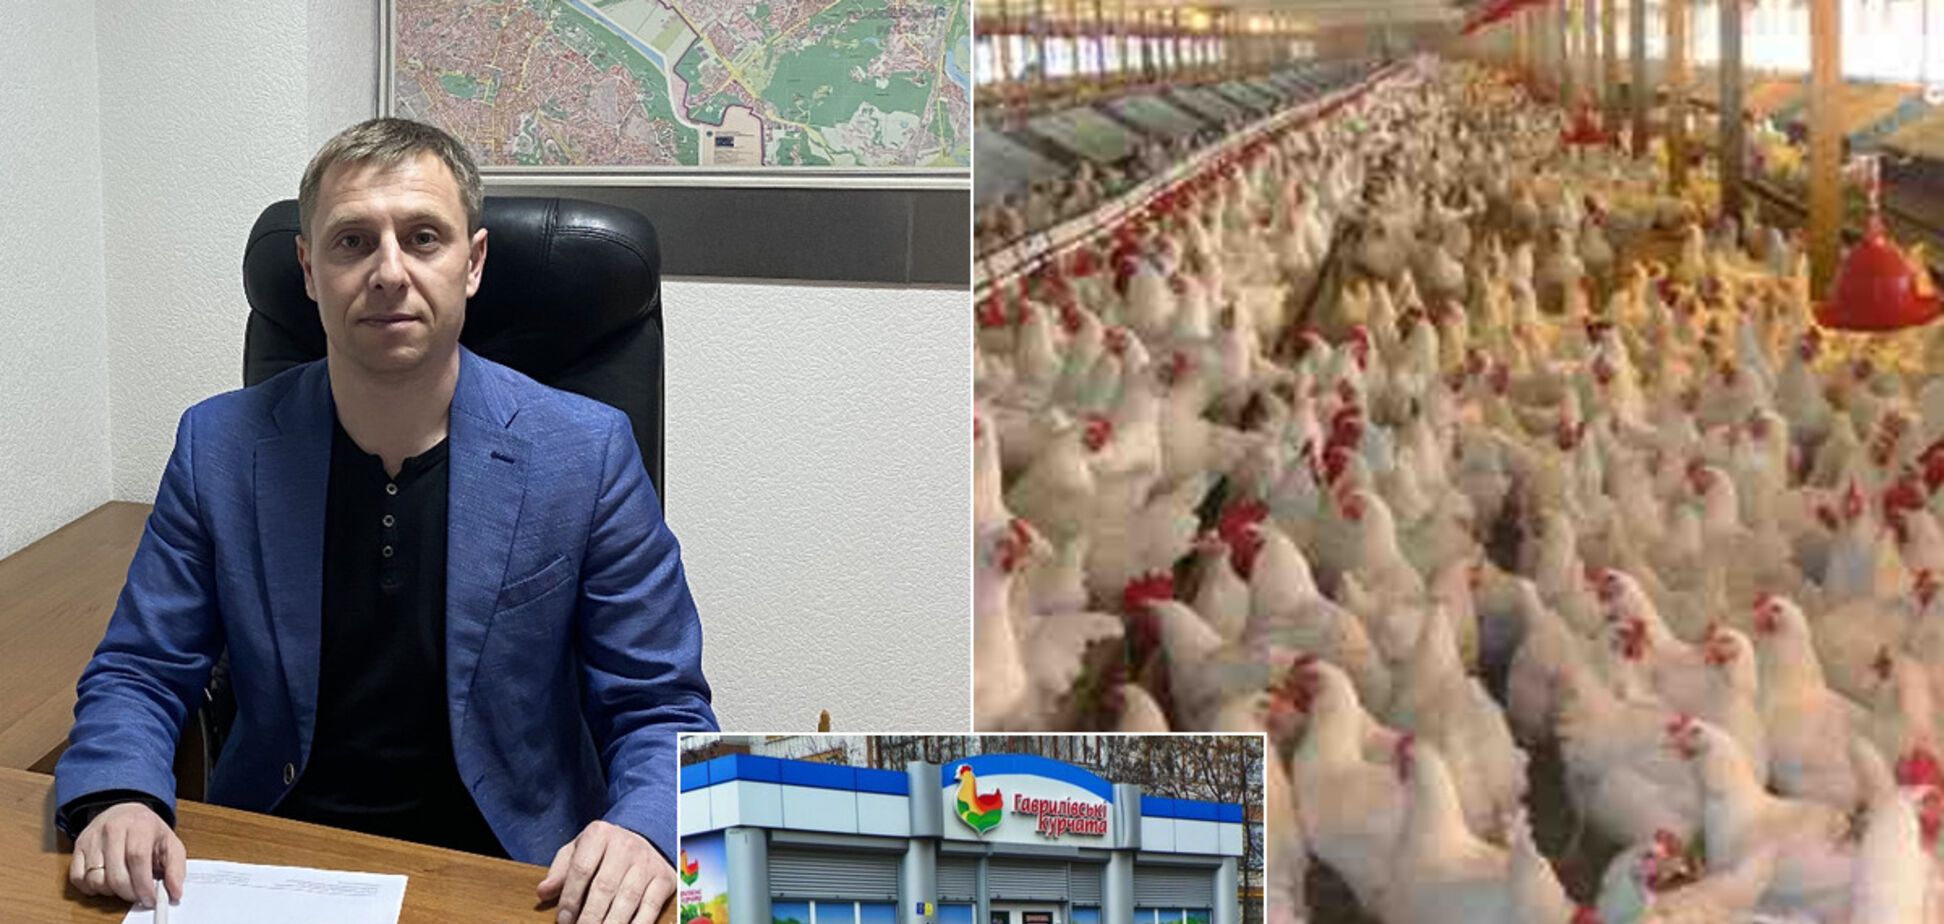 Гендиректор птицефабрики рассказал о выживании бизнеса в условиях карантина